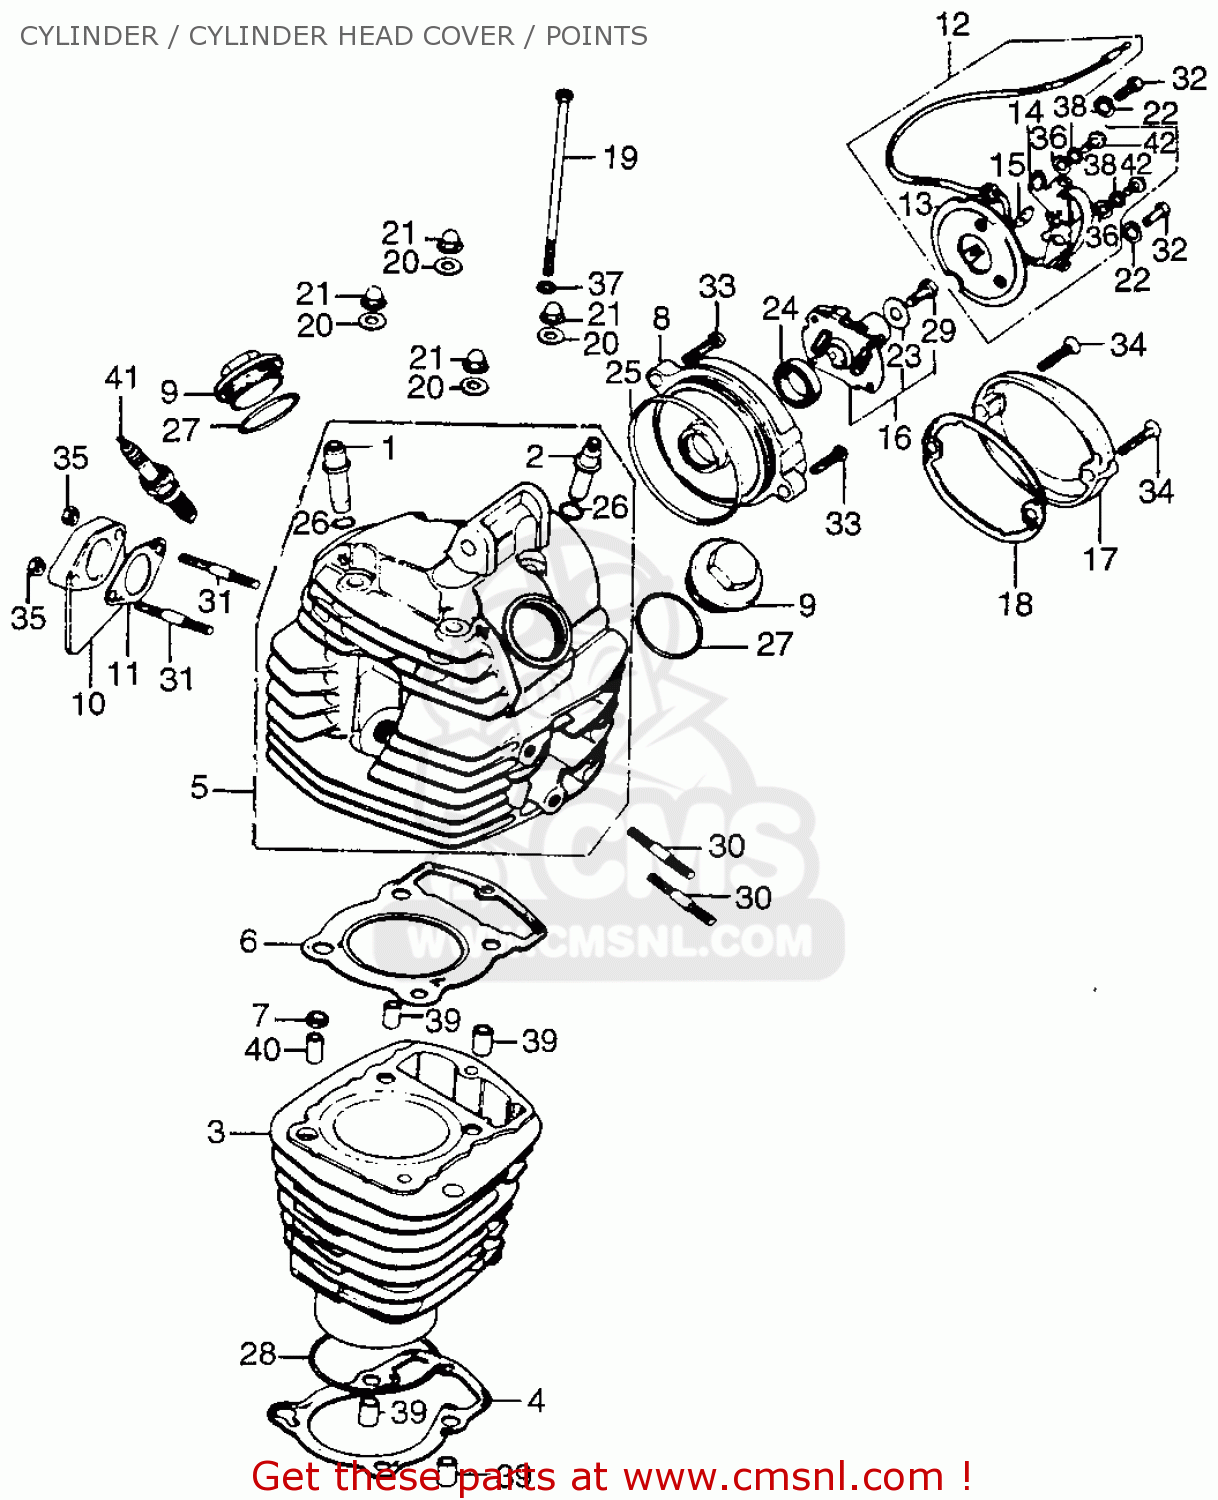 cylindercylinder-head-coverpoints-tl125-trials-k2-usa_bighu0106e5201_c37b.gif